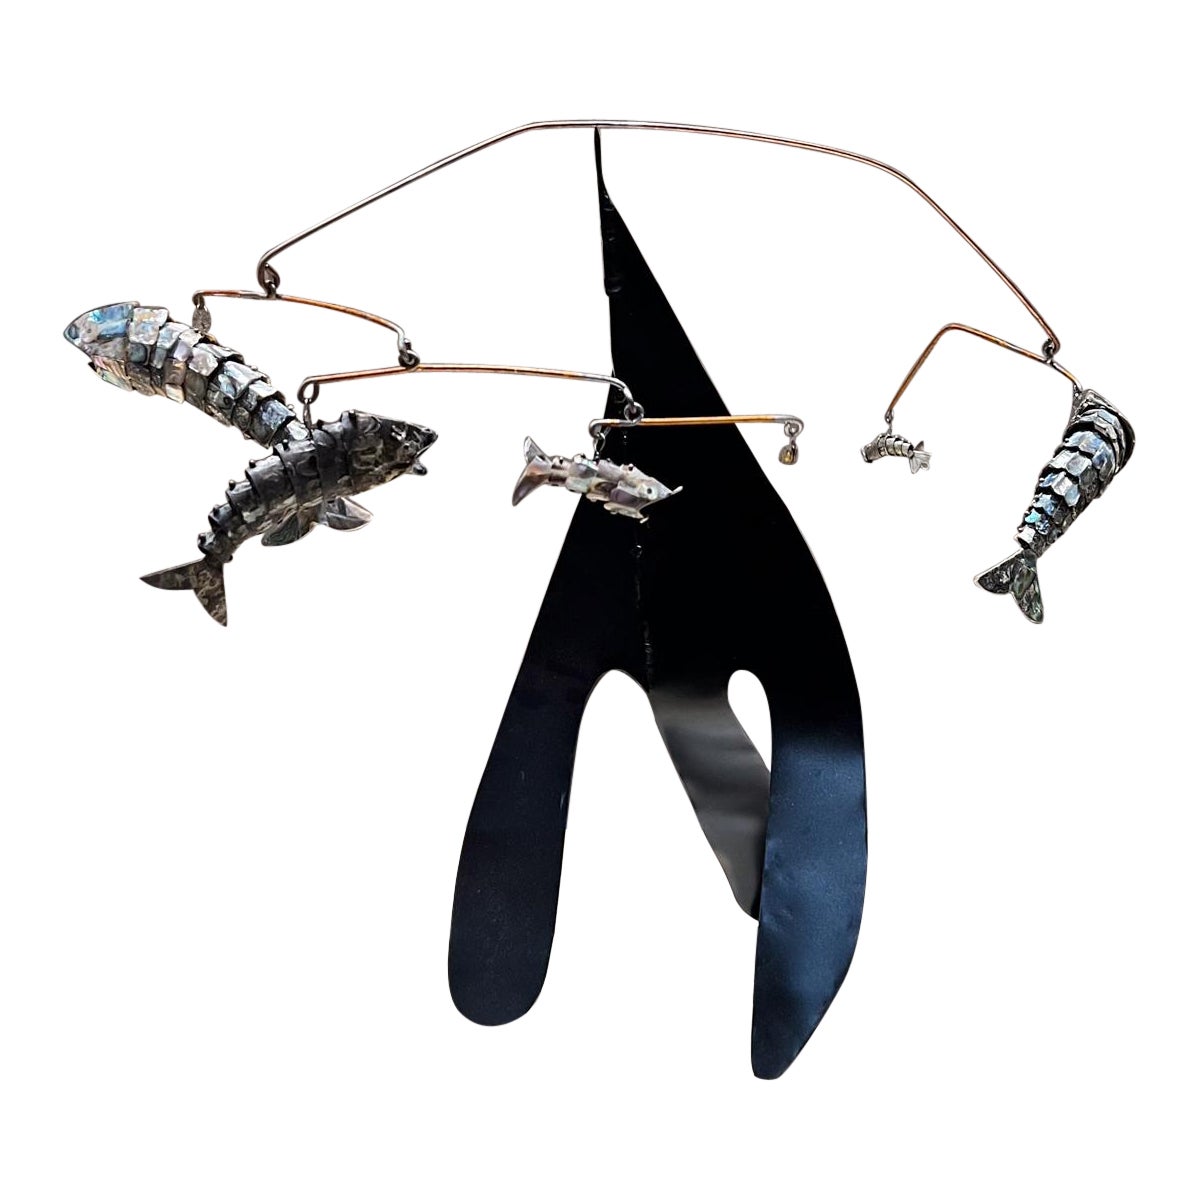 1960s Mobile Fish Sculpture manner of Alexander Calder